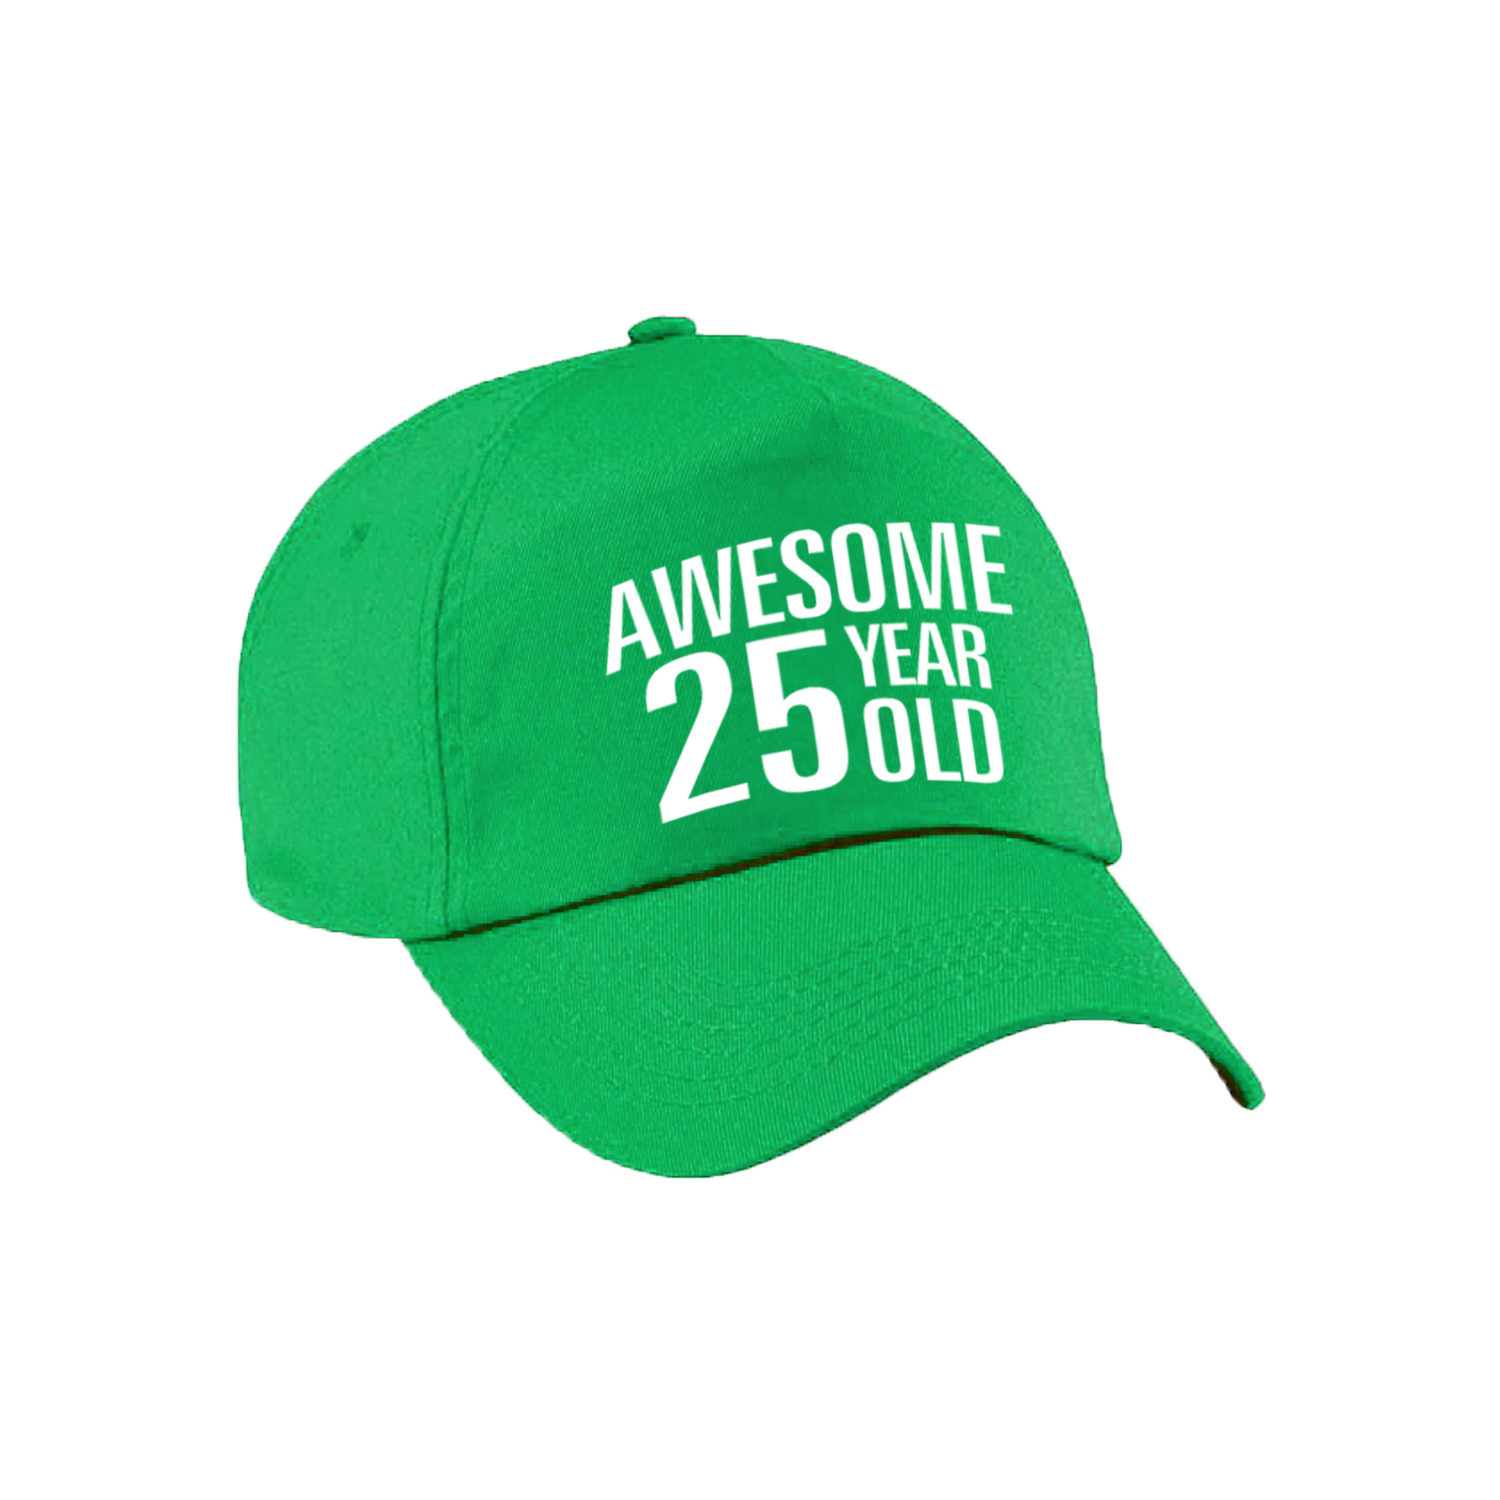 Awesome 25 year old verjaardag pet-cap groen voor dames en heren